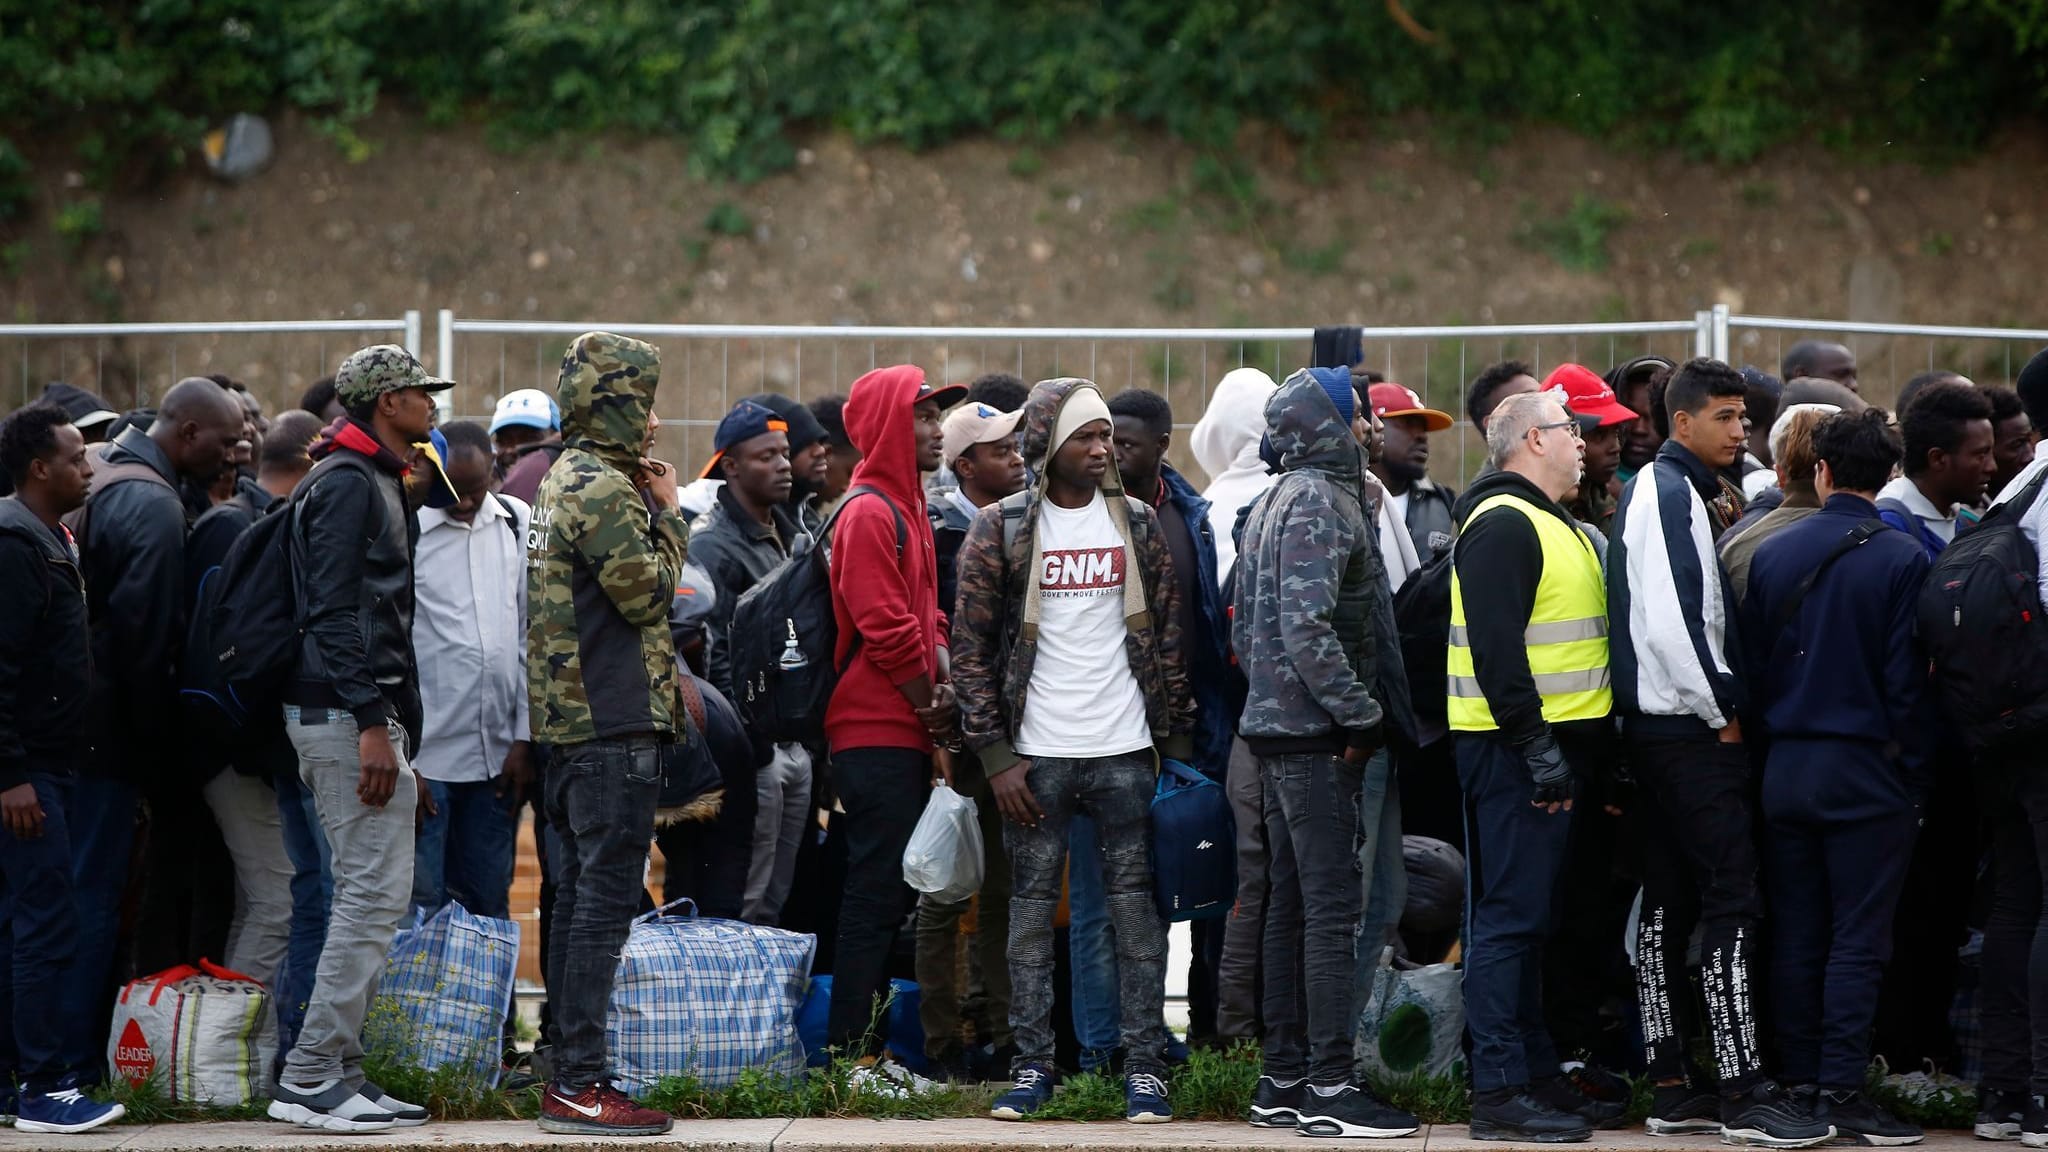 EU einigt sich auf Asylreform – so reagiert die Presse in Europa